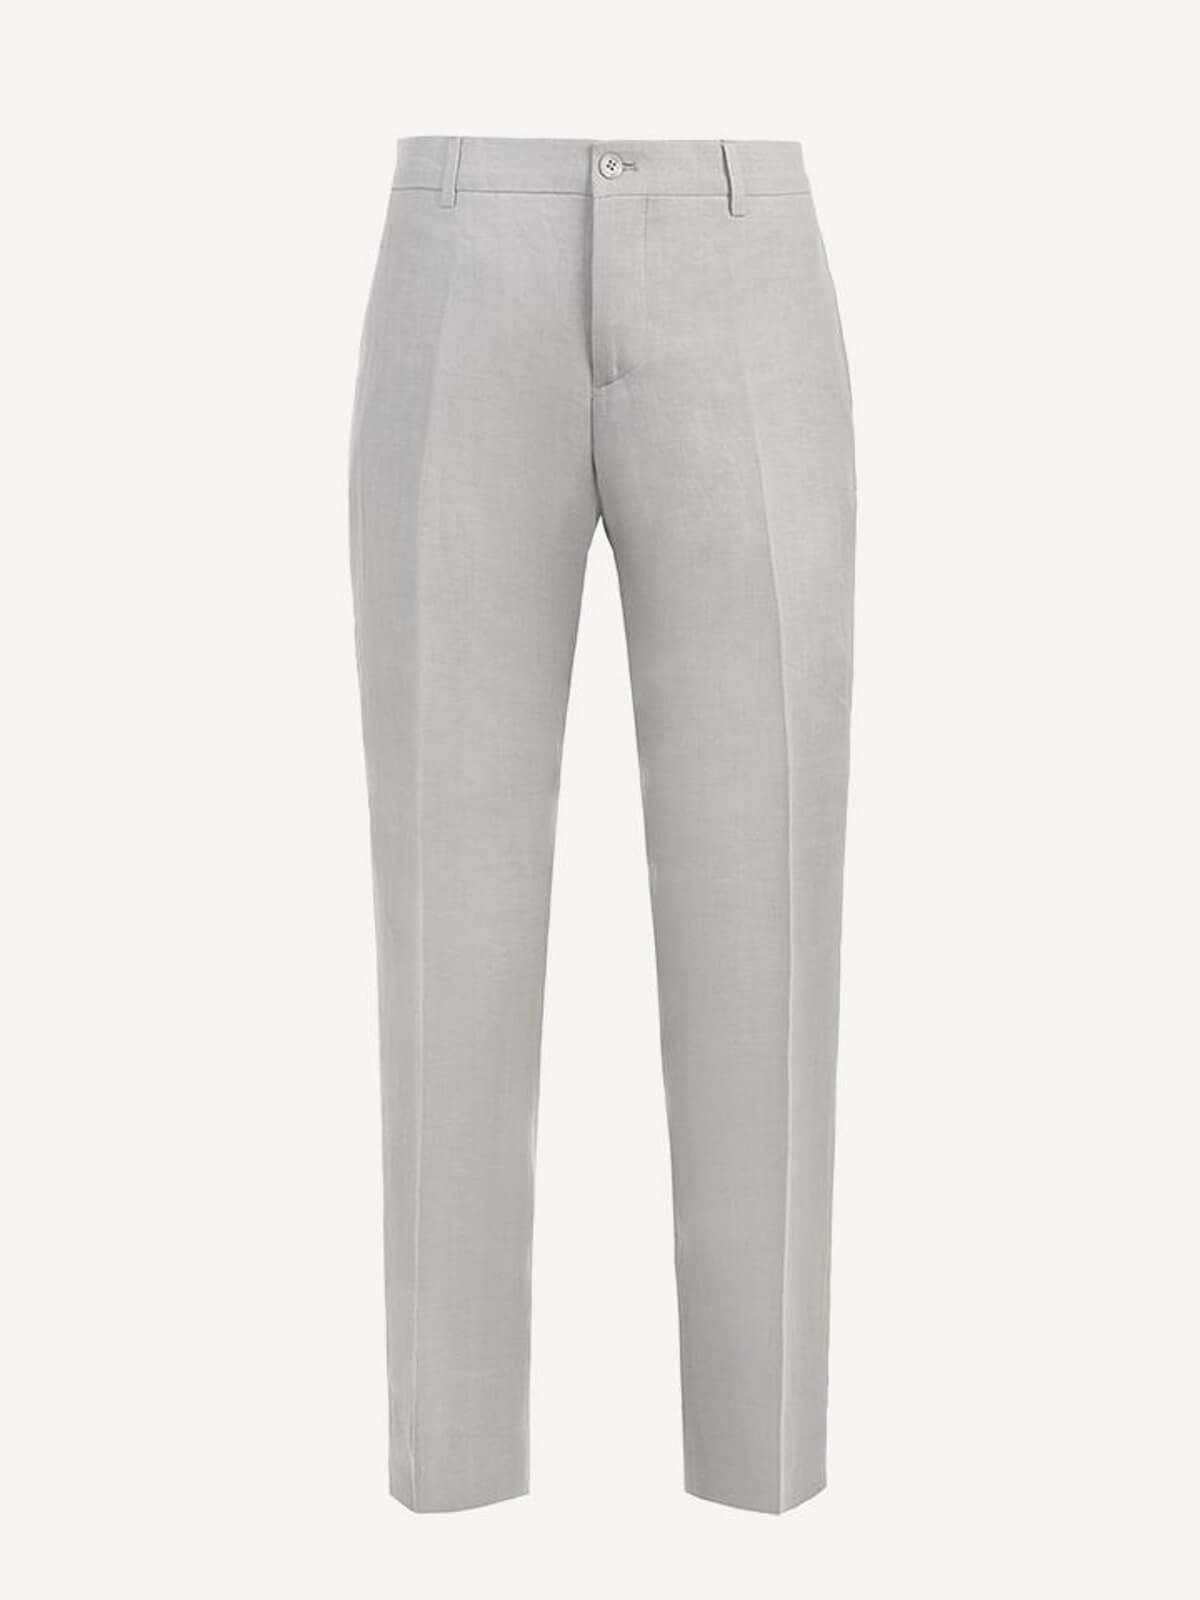 Pantalone New Capri  for woman 100% Capri light grey linen pant front